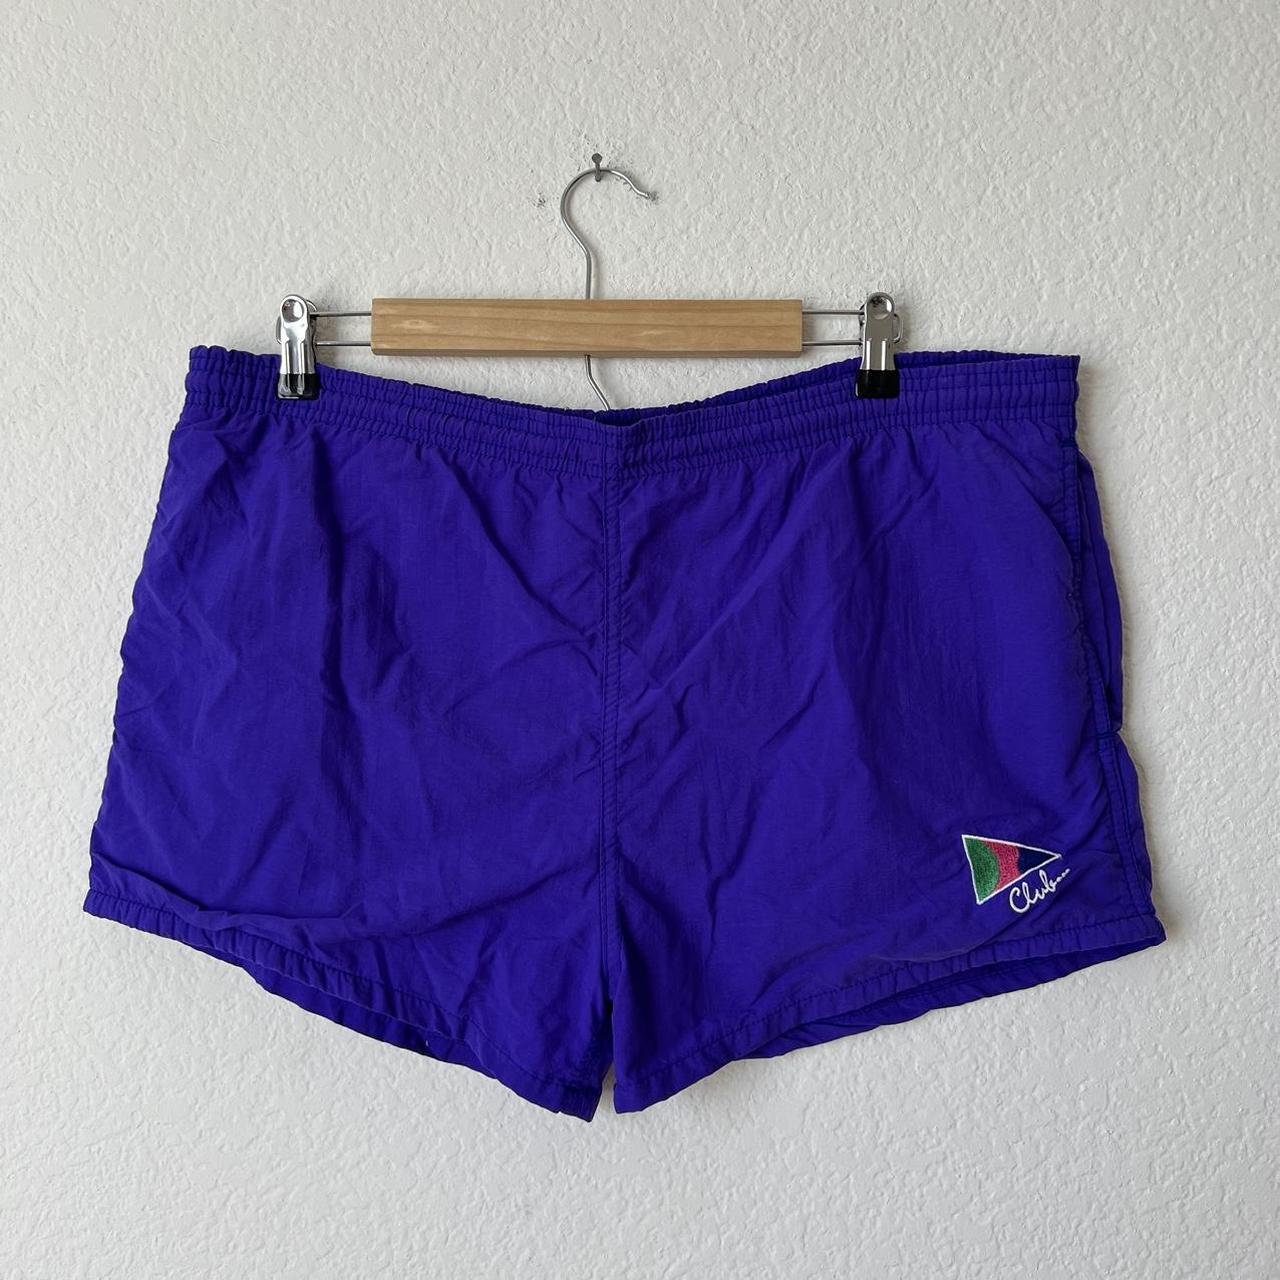 Men's Mesh Purple Shorts